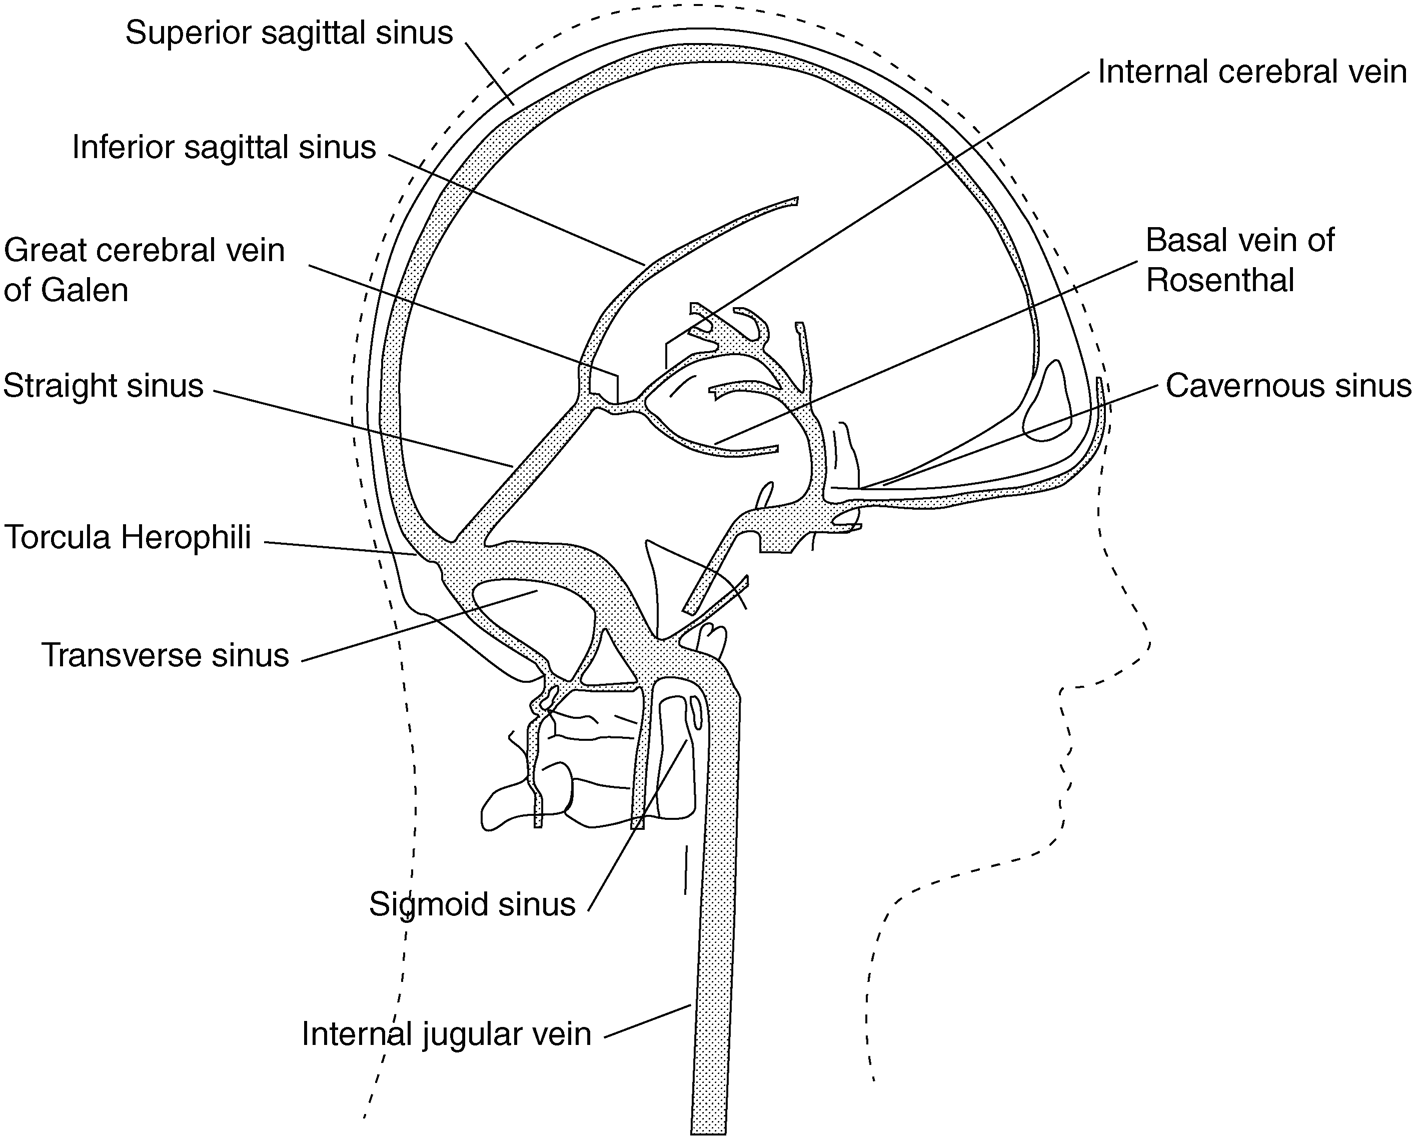 superior sagittal sinus thrombosis